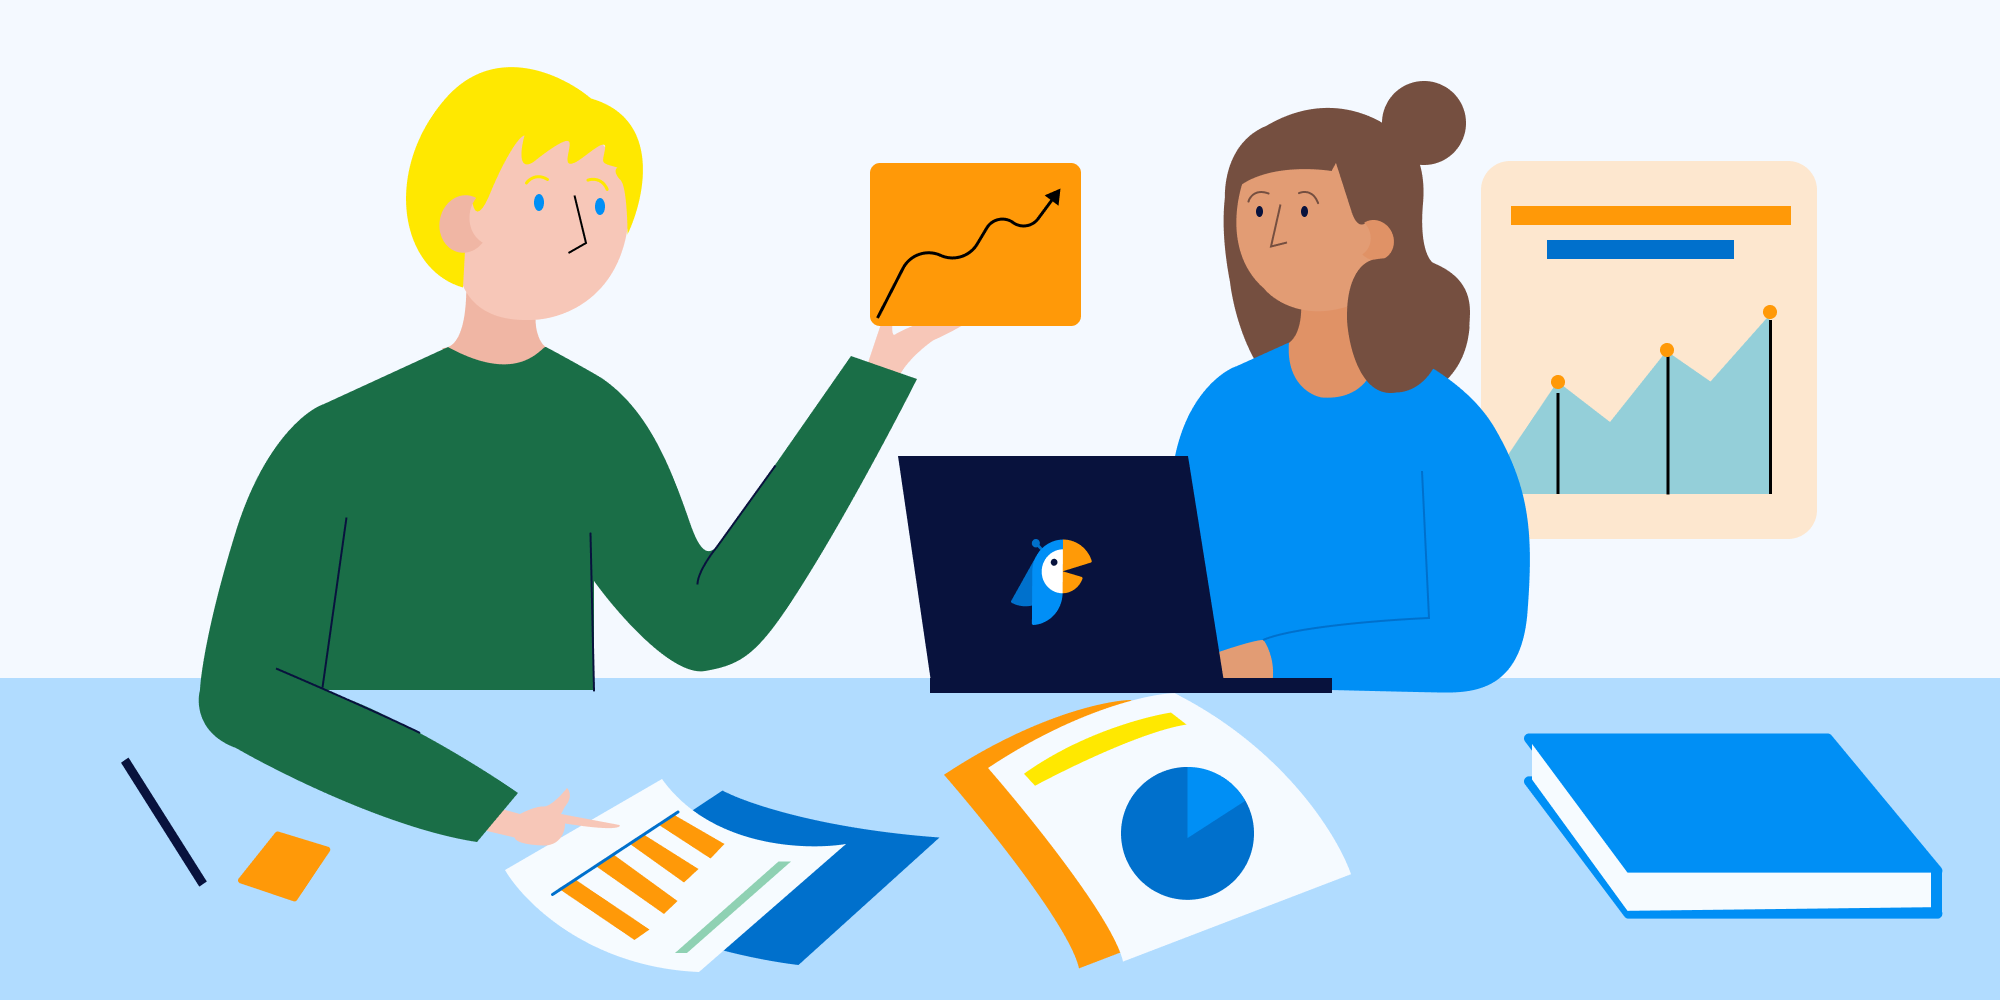 Surveys in Slack: illustration of employees working together